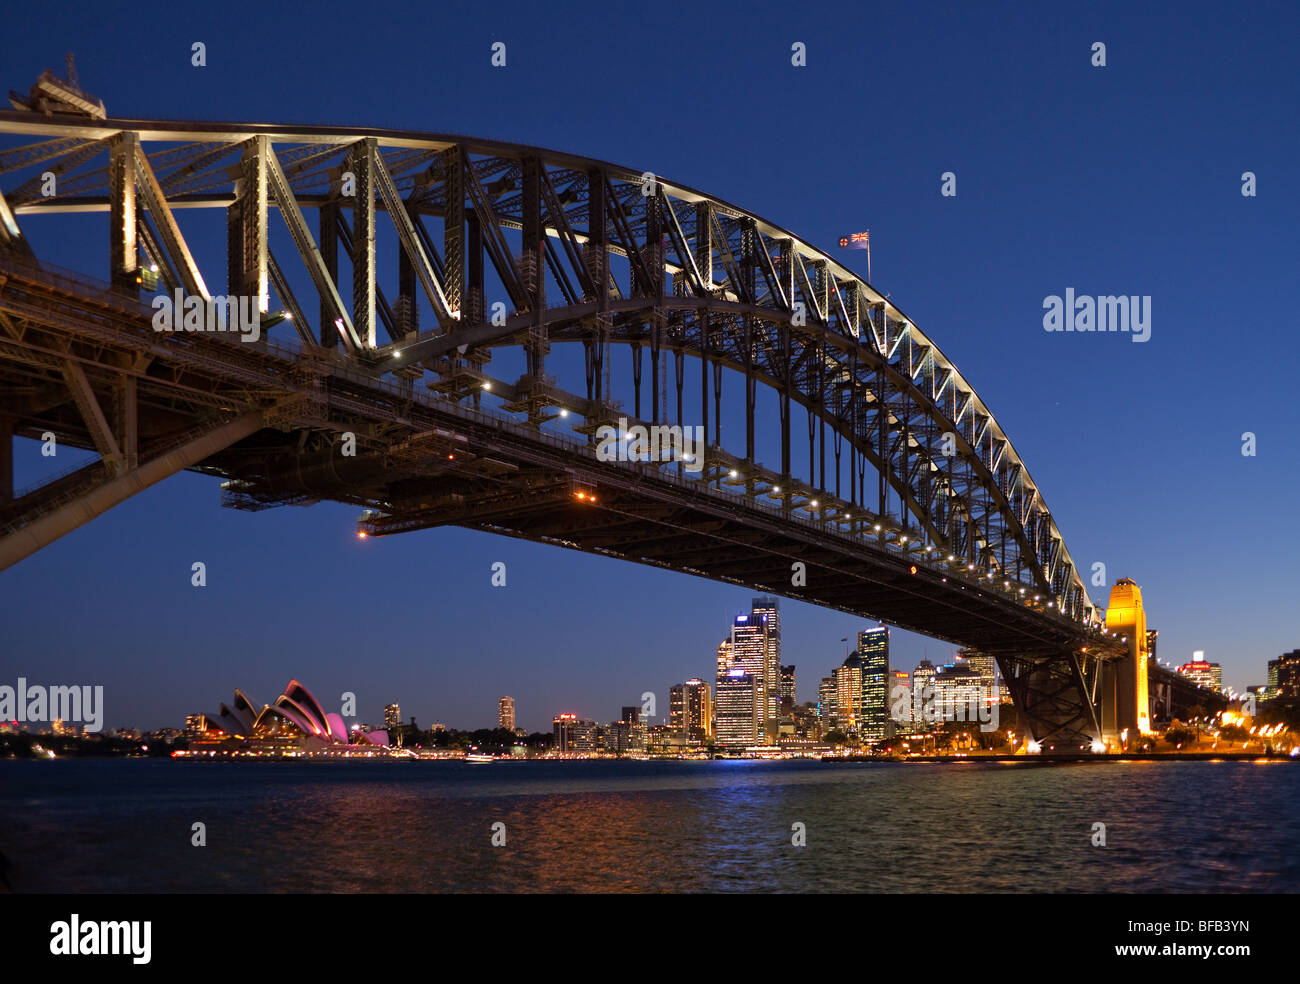 Le Sydney Harbour Bridge et l'Opéra de Sydney au crépuscule Banque D'Images